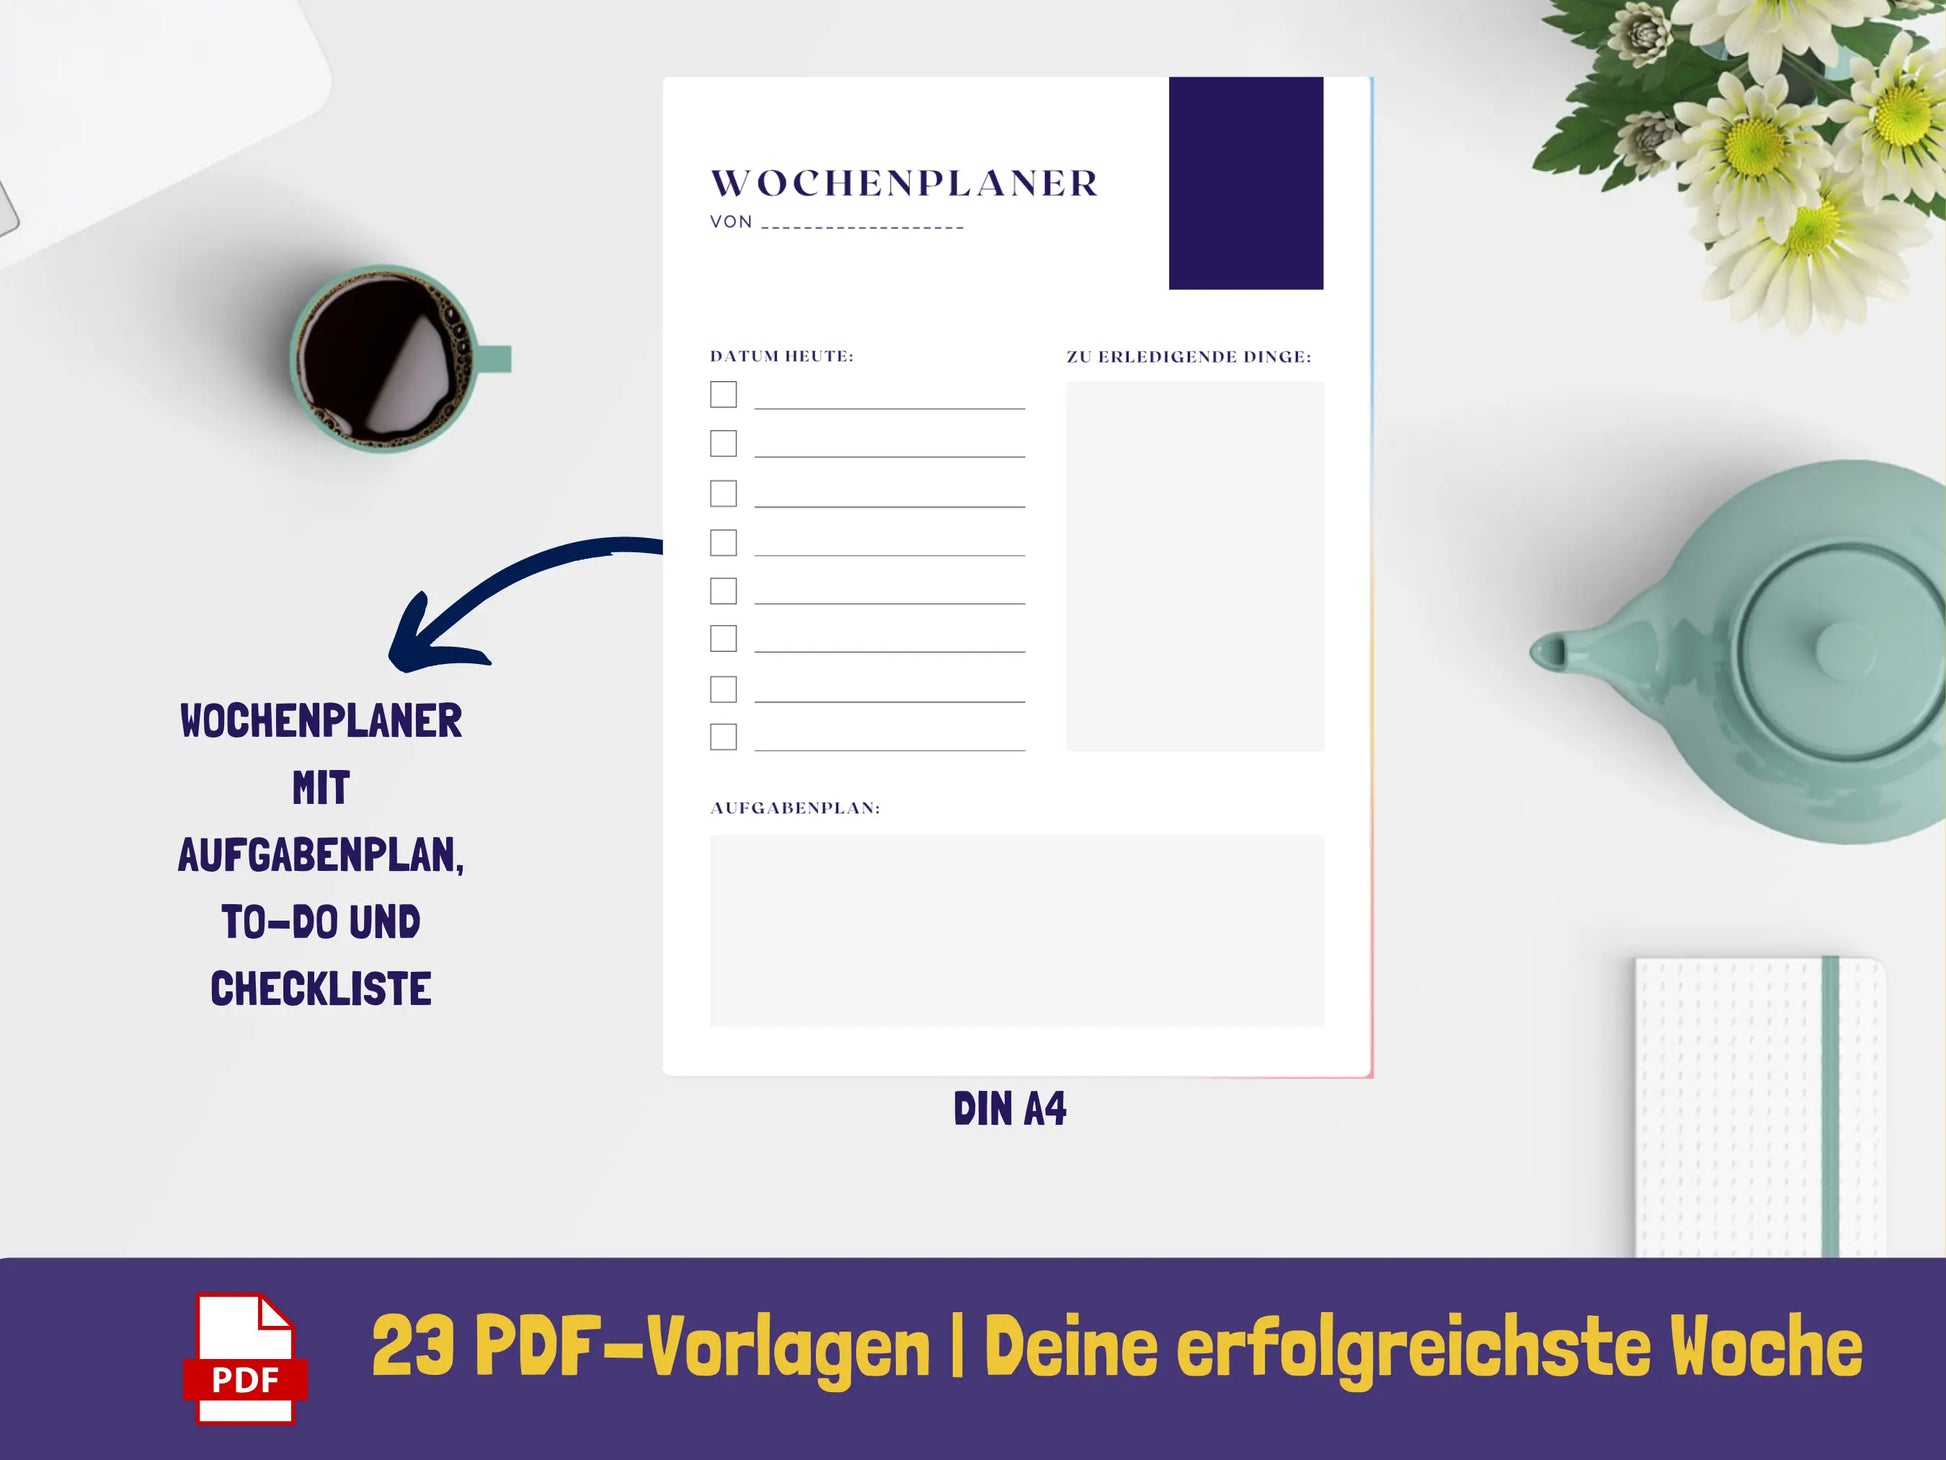 Wochenplaner: Deine erfolgreichste Woche - Variante Blätter {23 Seiten} PDF AndreasJansen Vorlage